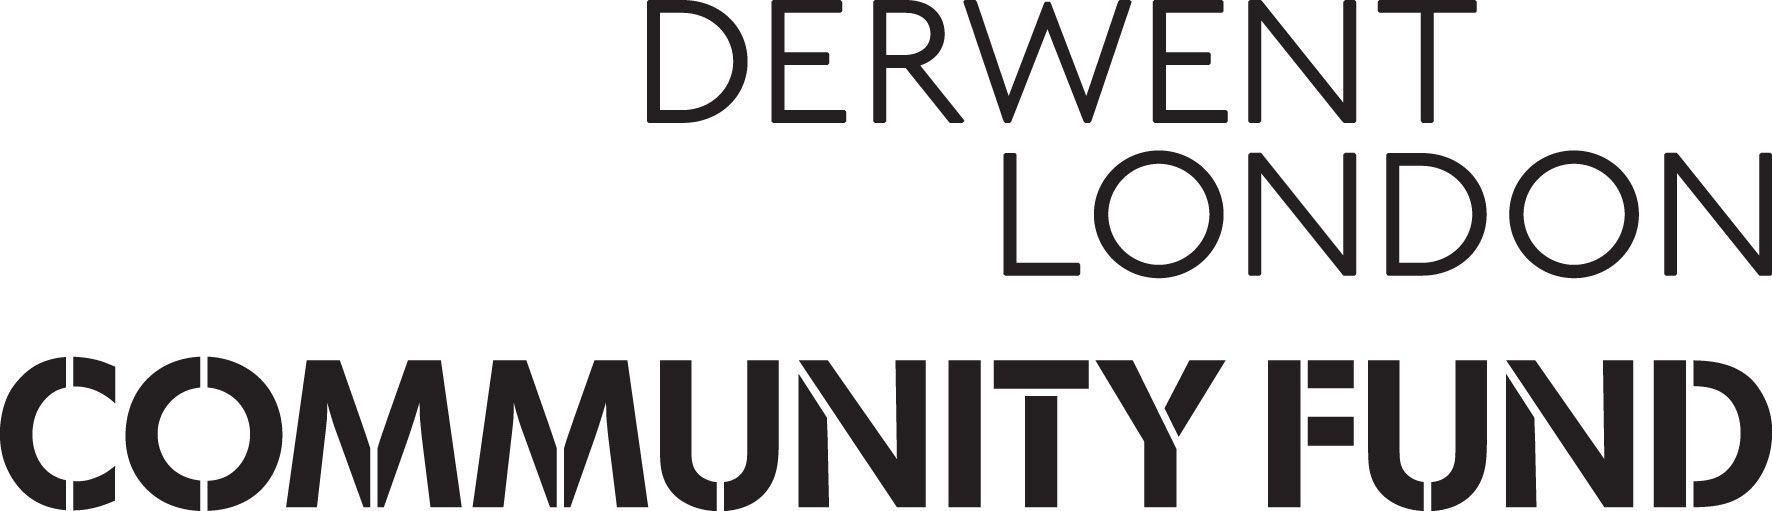 Derwent Logo - Derwent London Community Fund for Tech Belt Update Collar